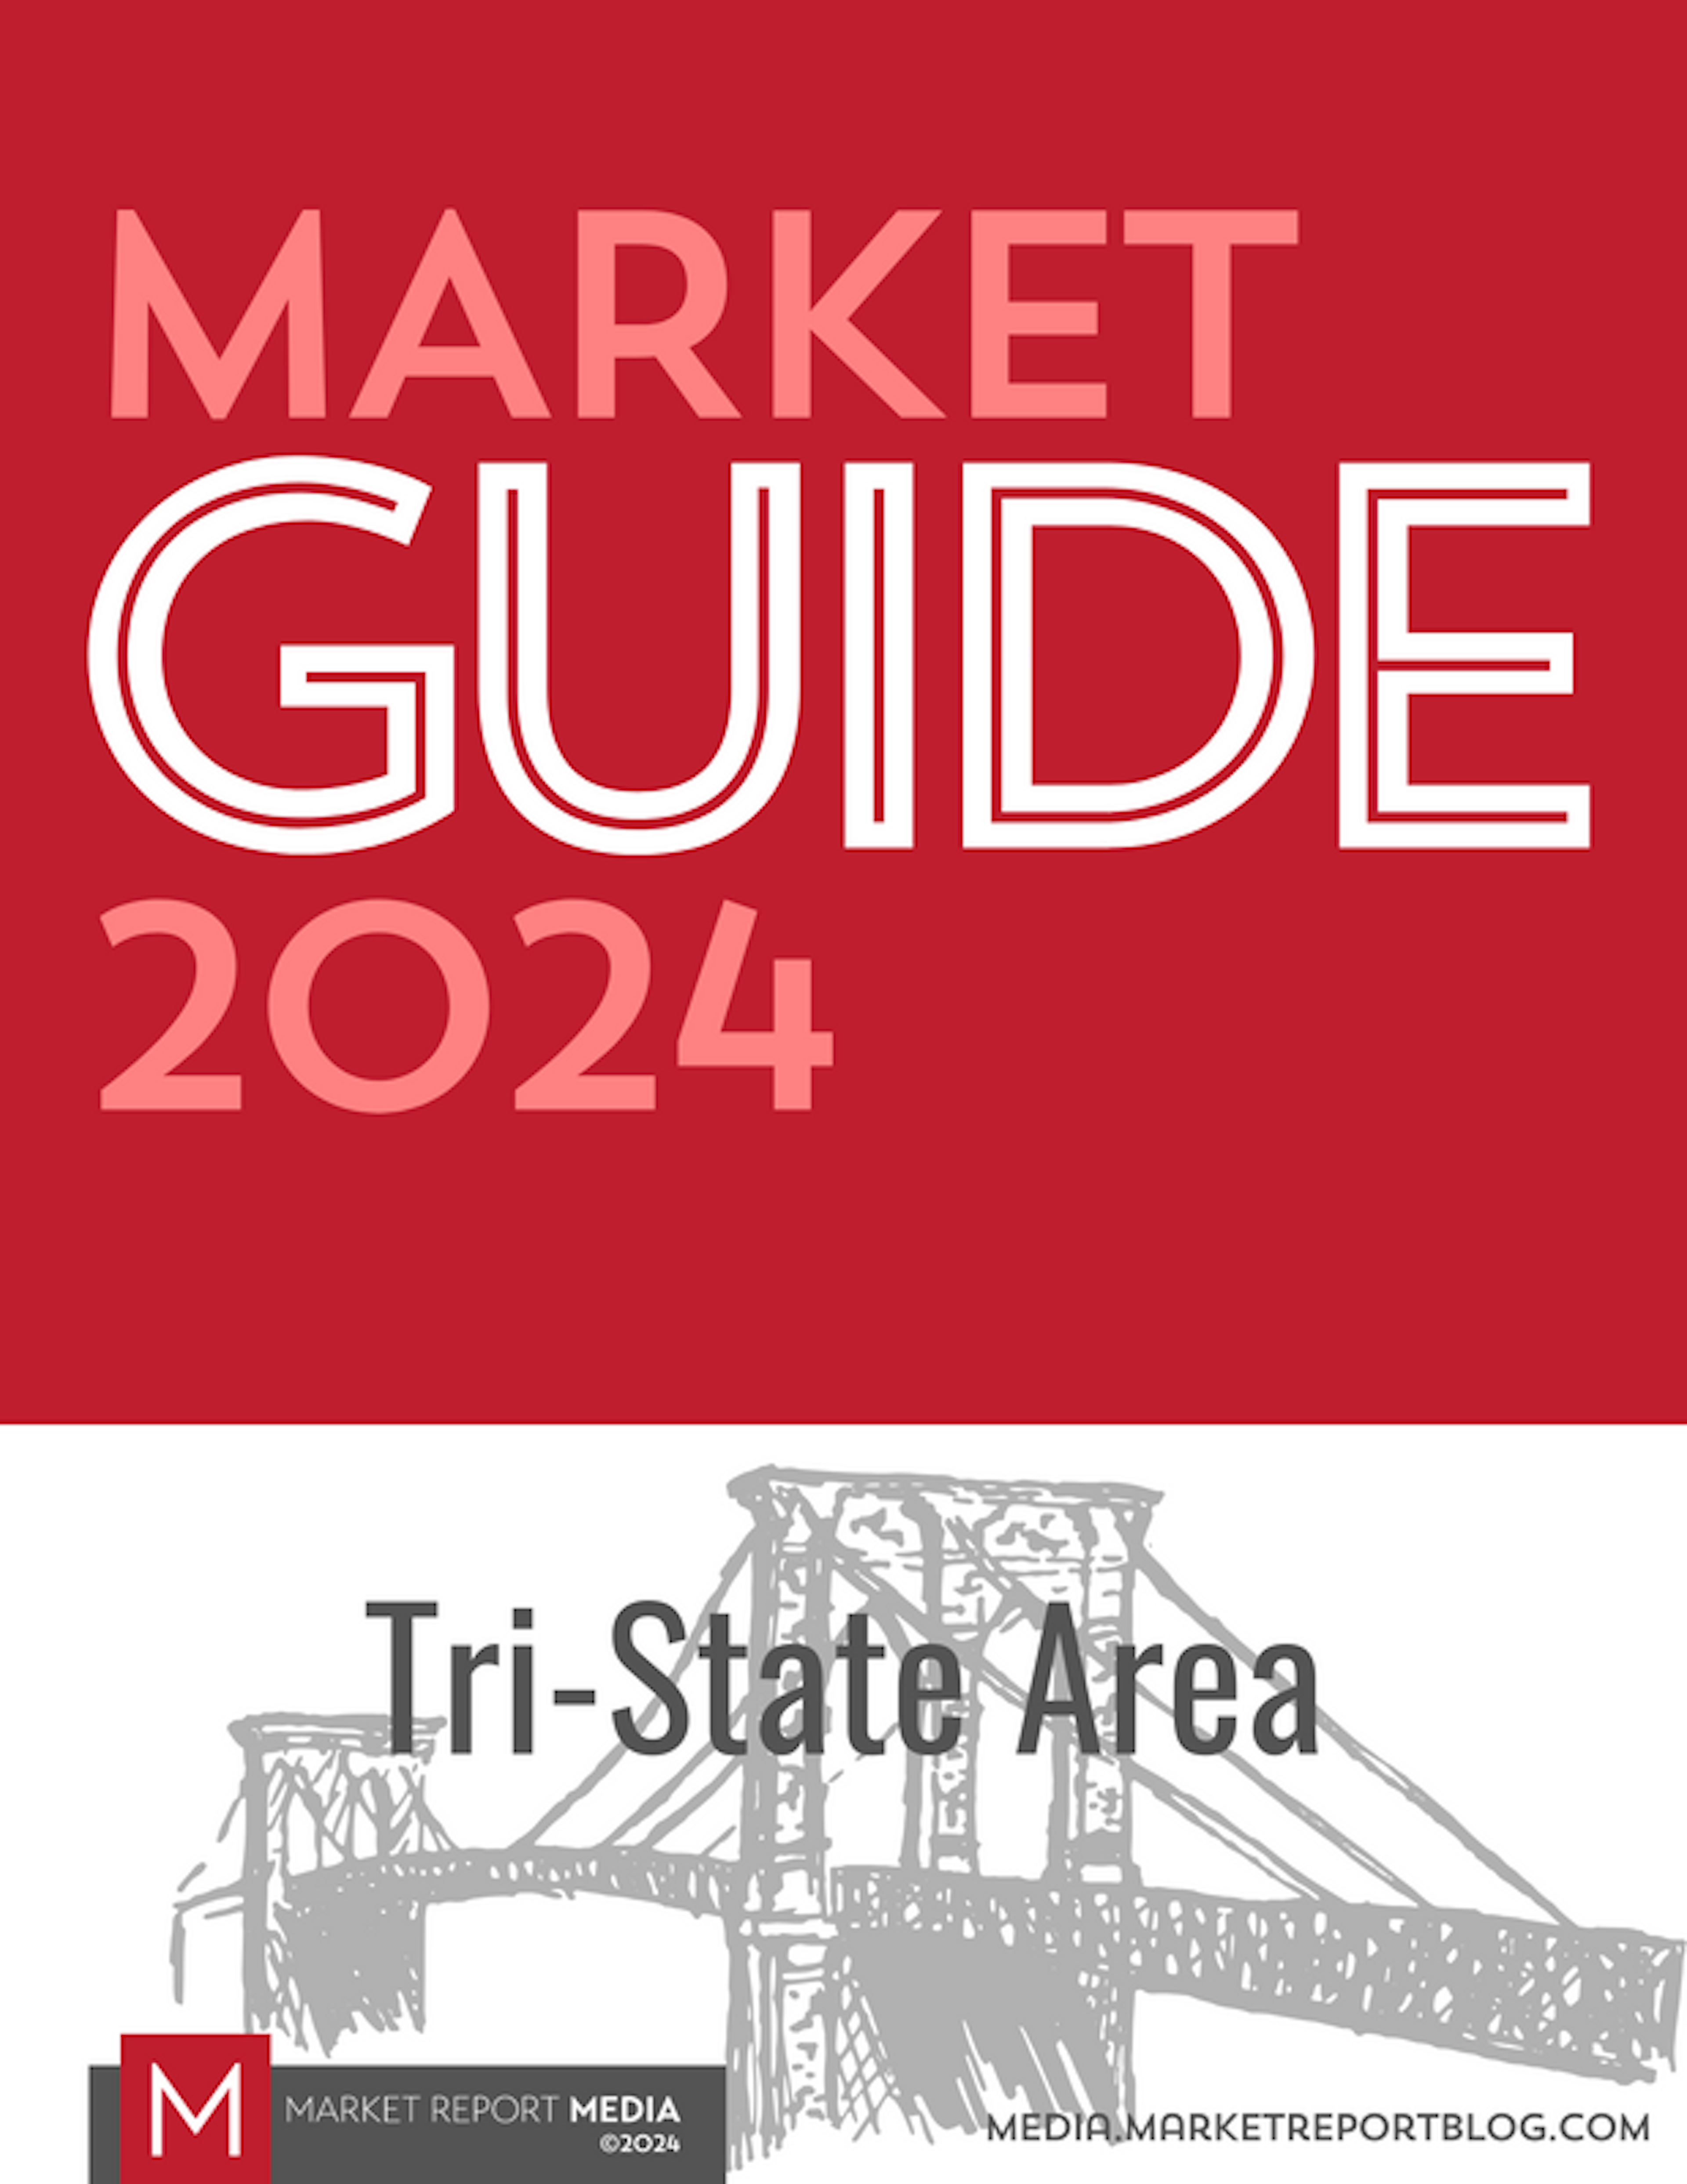 Market Guide 2024 - Tri-State Area